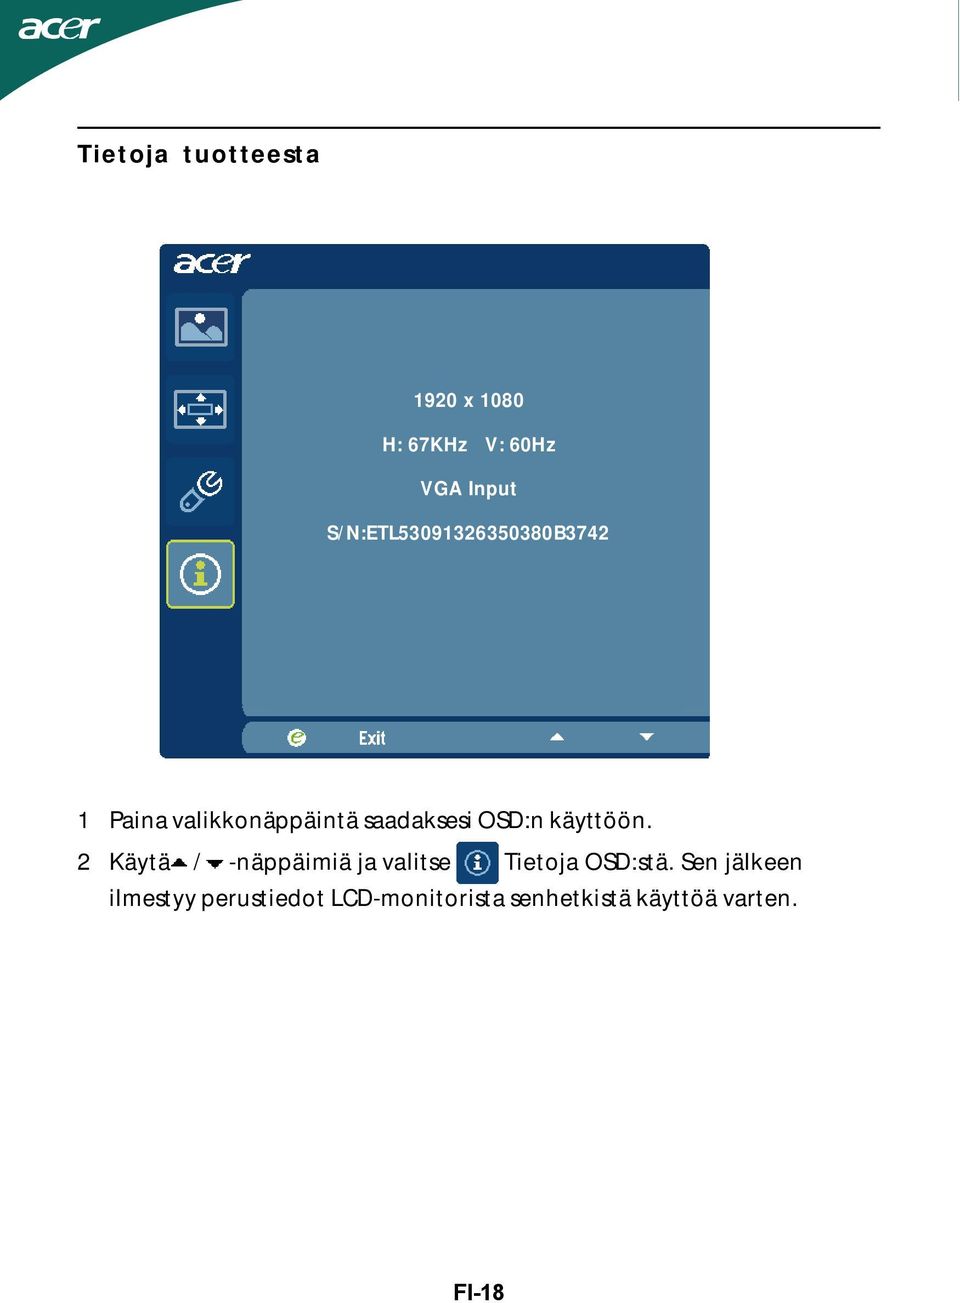 OSD:n käyttöön. 2 Käytä / -näppäimiä ja valitse Tietoja OSD:stä.